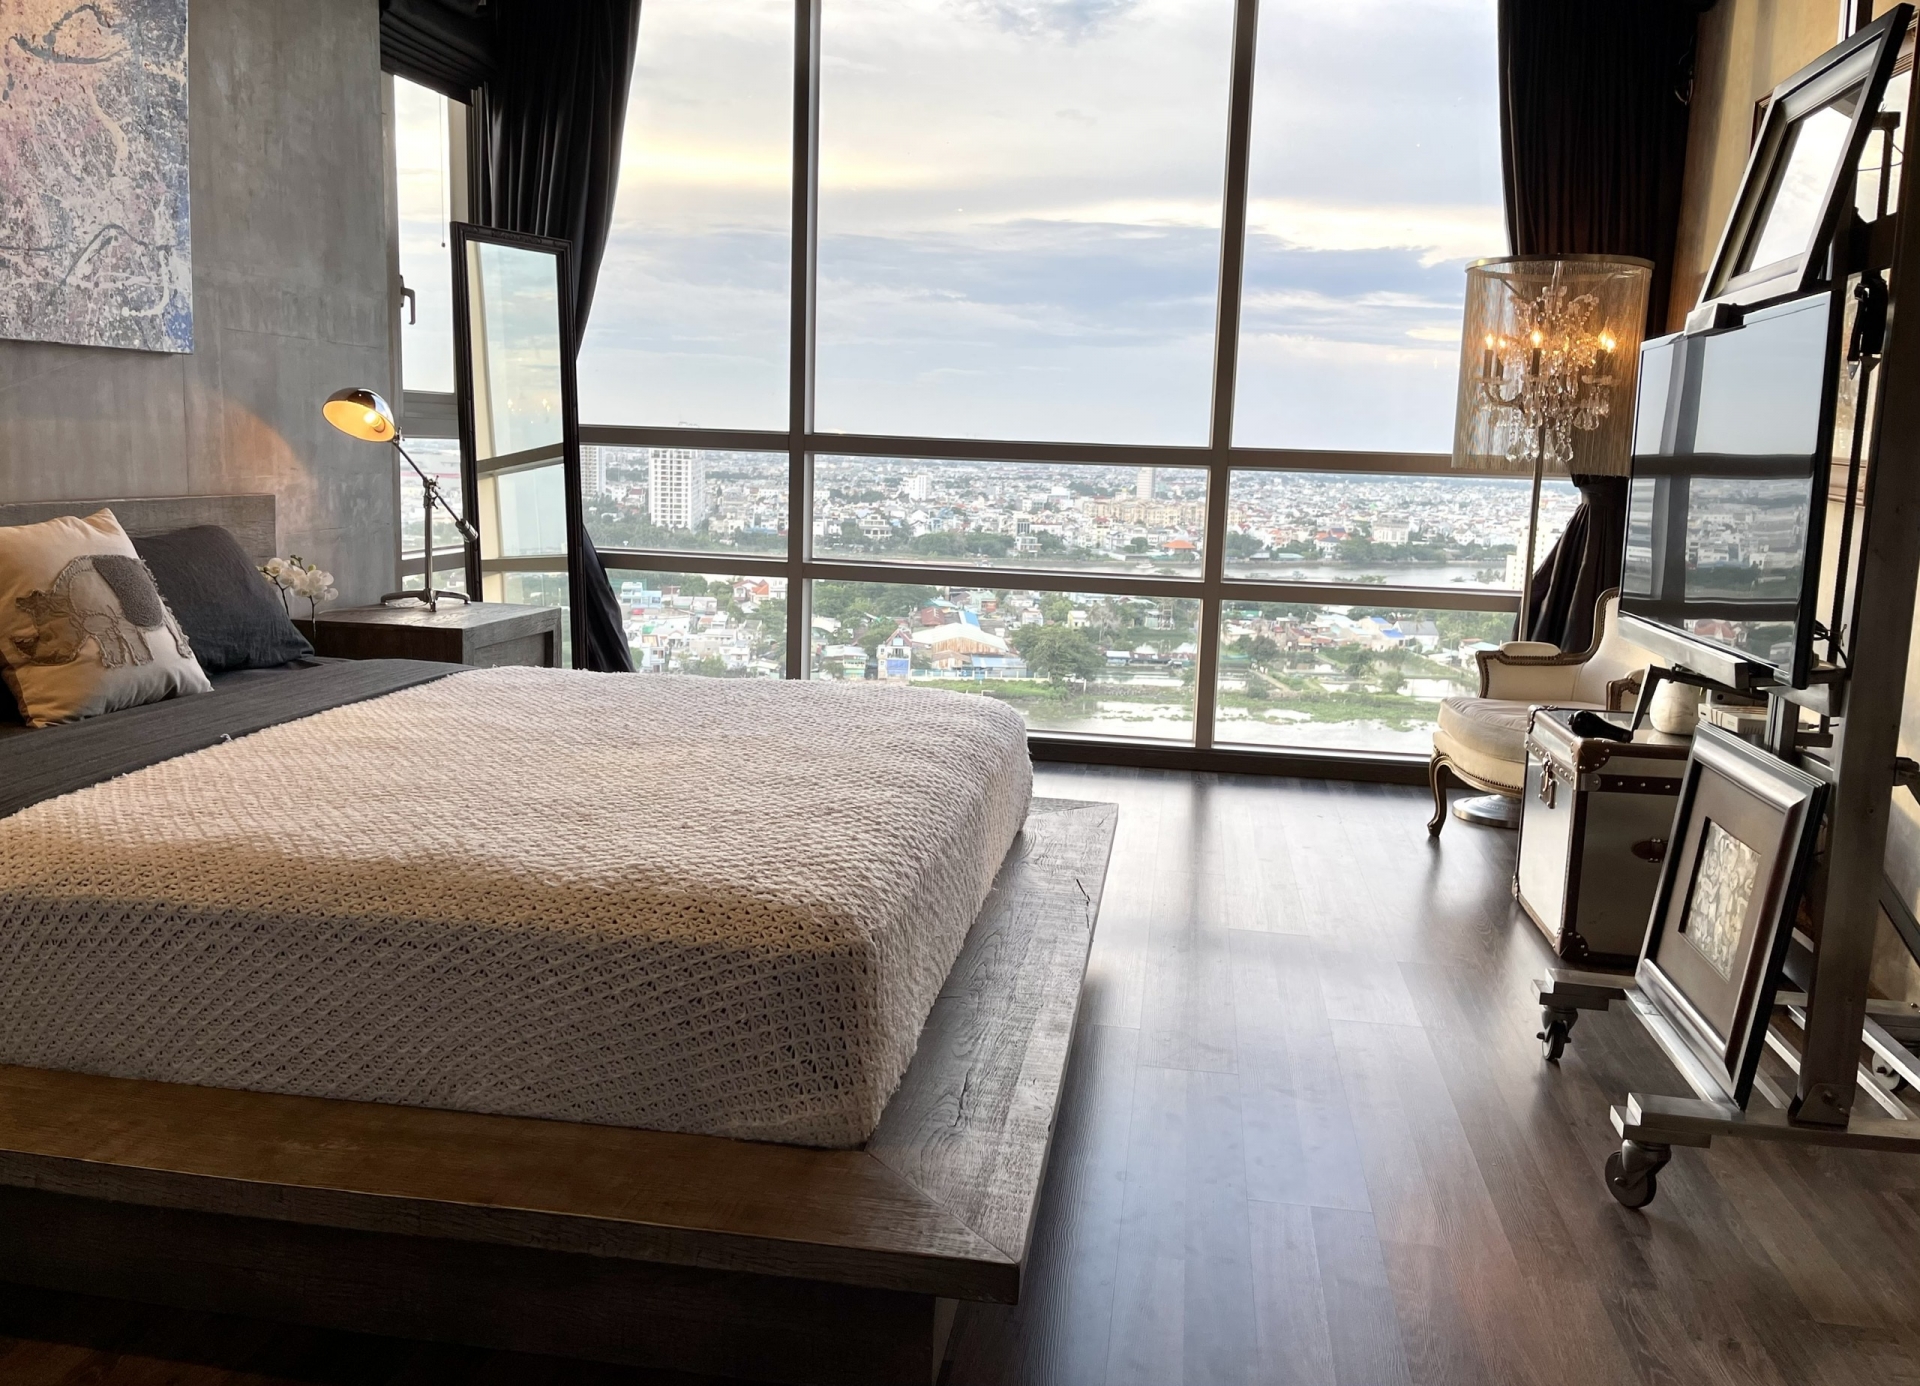 Căn phòng ngủ được thiết kế lắp kính toàn bộ để nữ ca sĩ có thể ngắm trọn sông Sài Gòn lãng mạn.